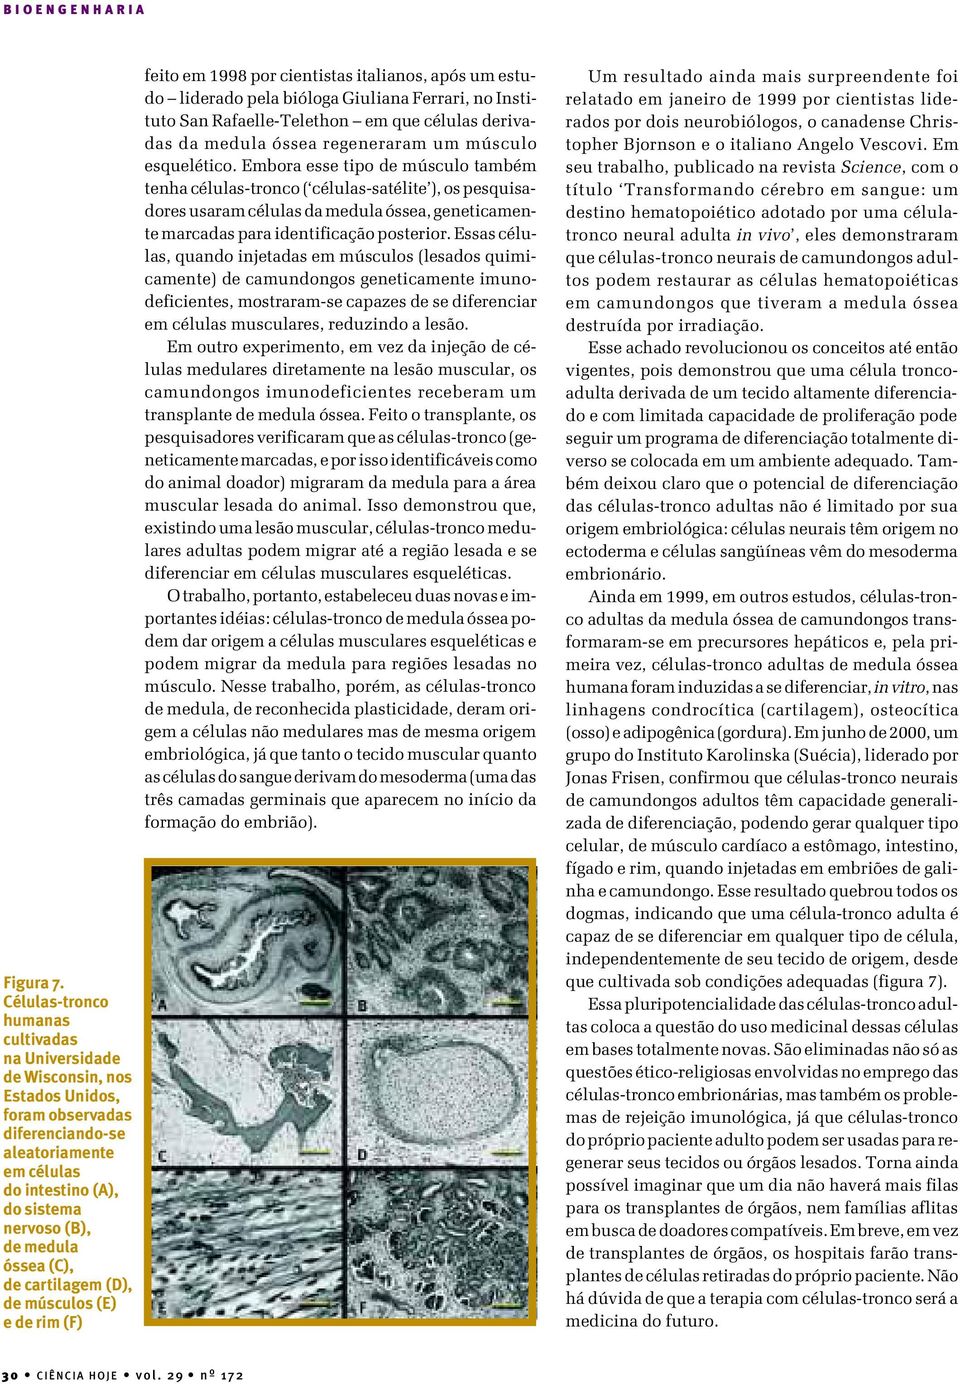 óssea (C), de cartilagem (D), de músculos (E) e de rim (F) feito em 1998 por cientistas italianos, após um estudo liderado pela bióloga Giuliana Ferrari, no Instituto San Rafaelle-Telethon em que